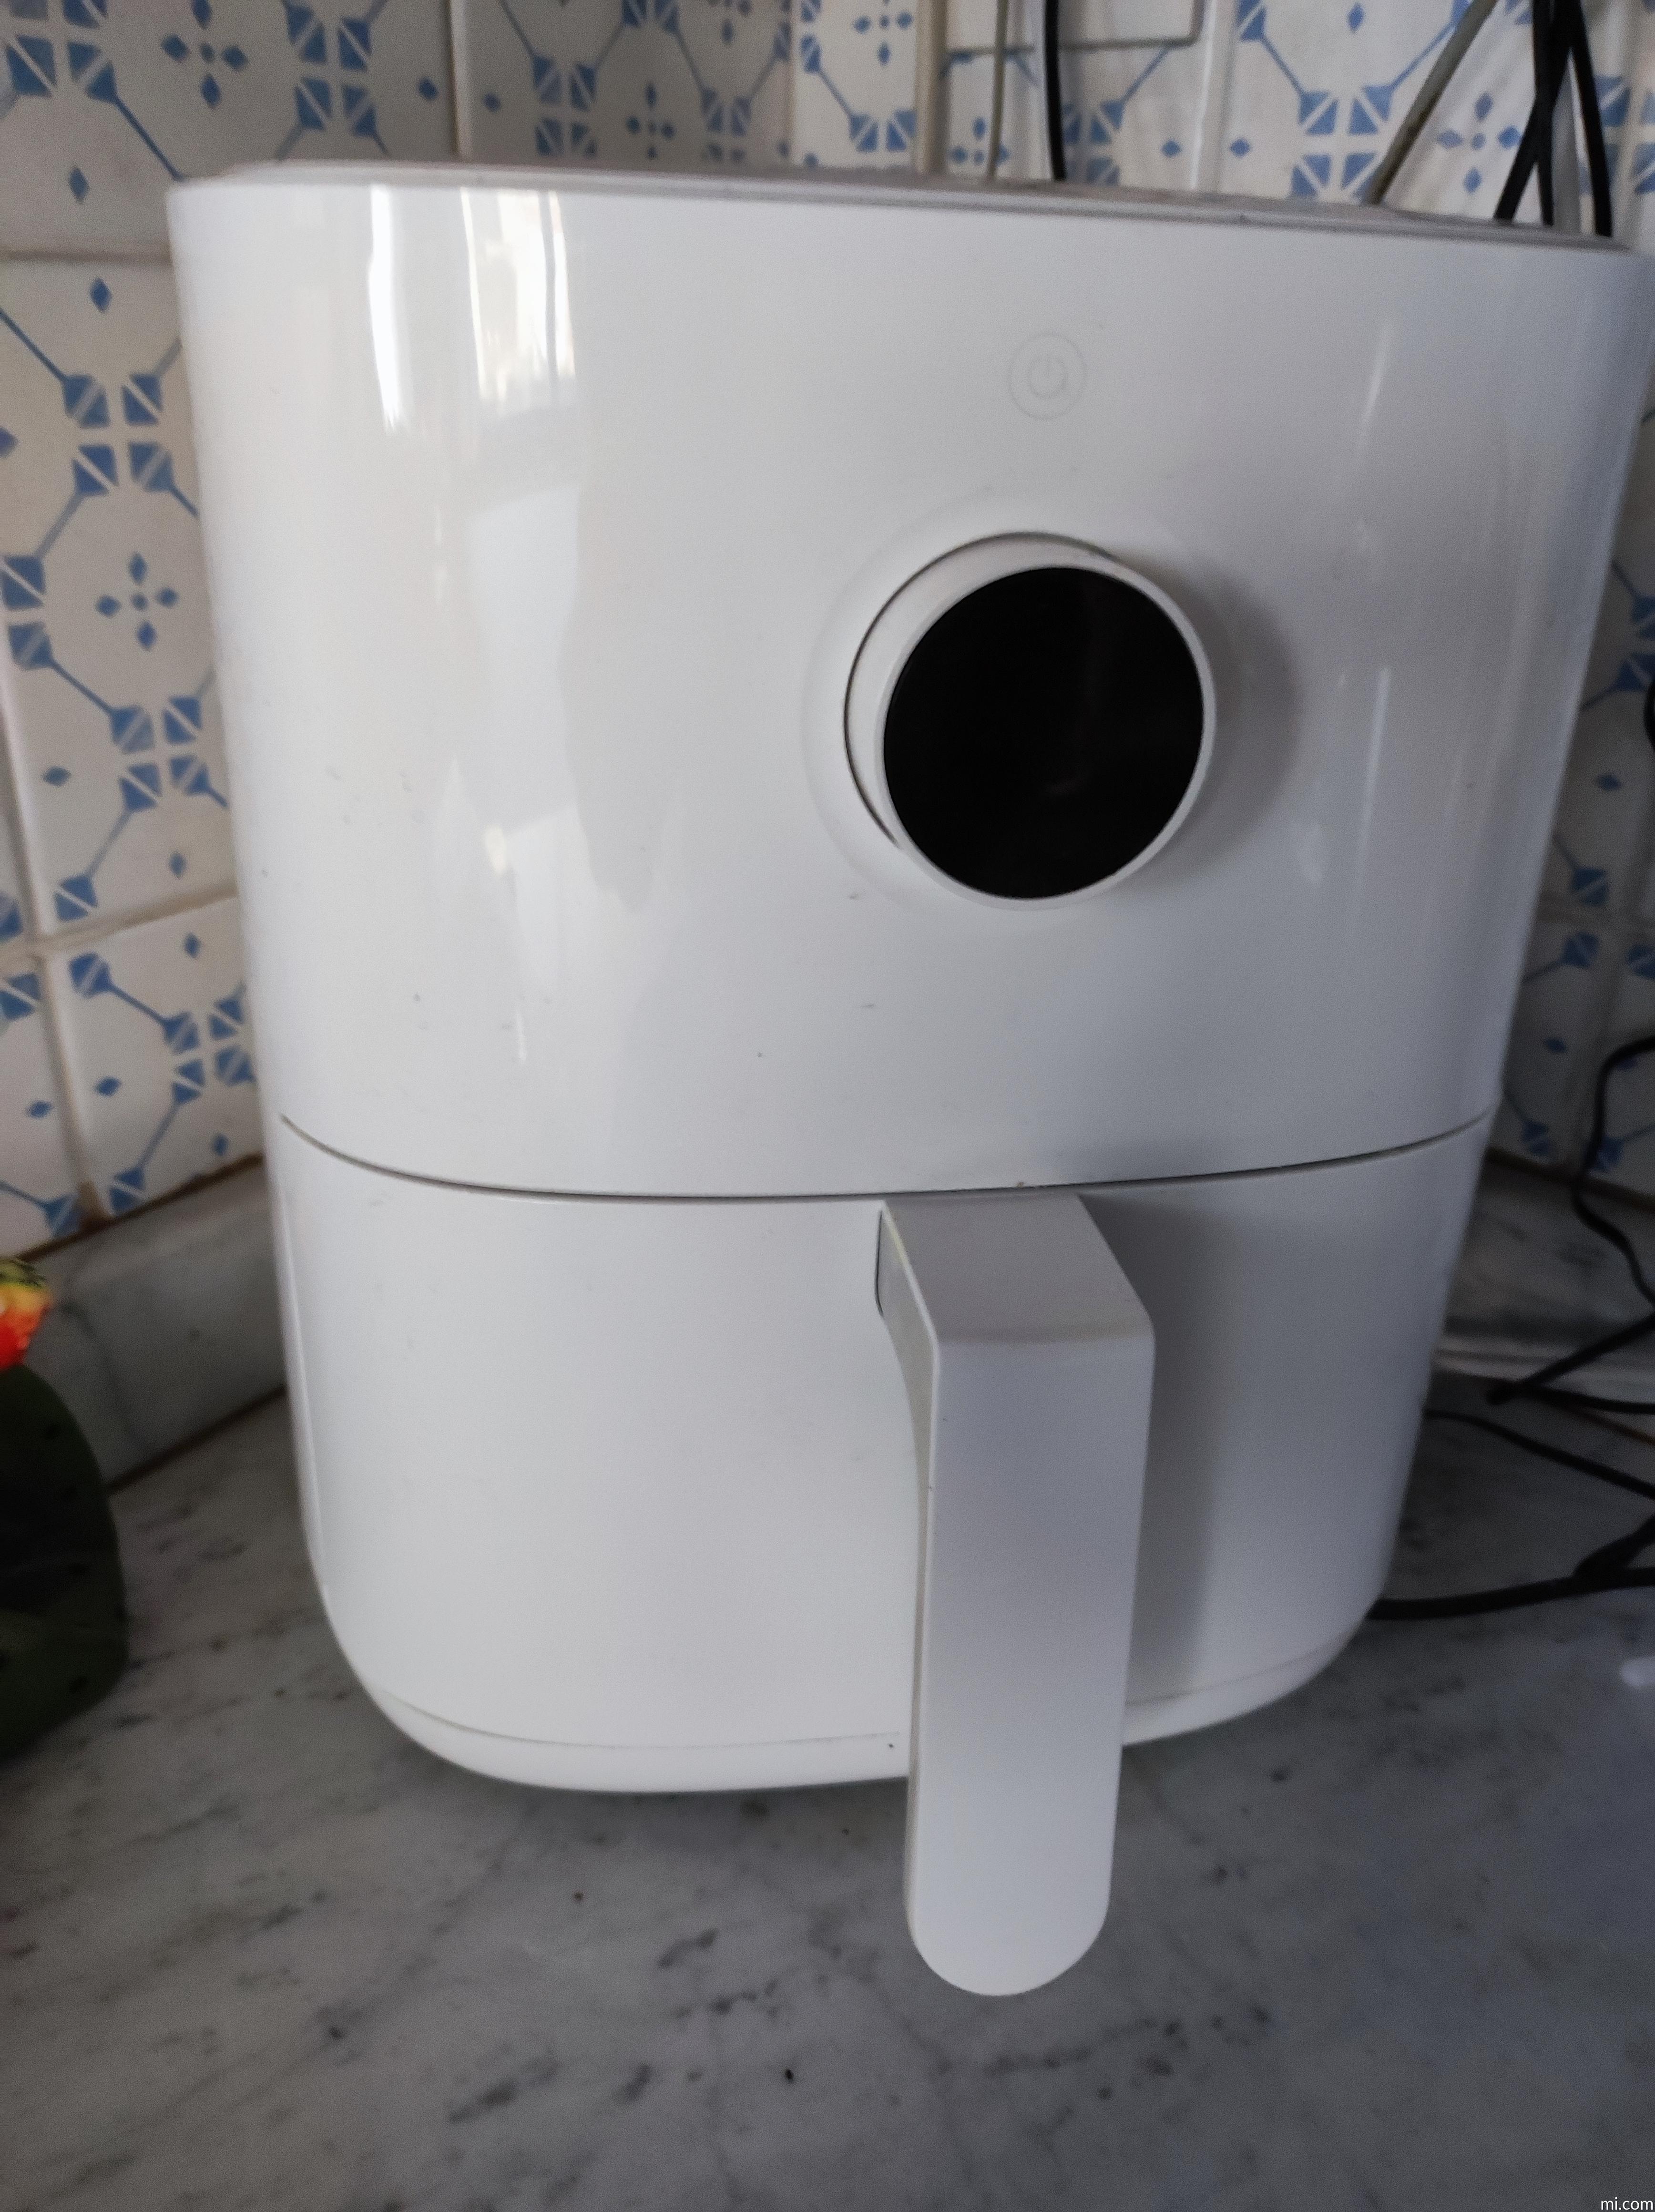 Xiaomi Mi Smart Air Fryer 3,5L: la prima friggitrice ad aria calda del brand